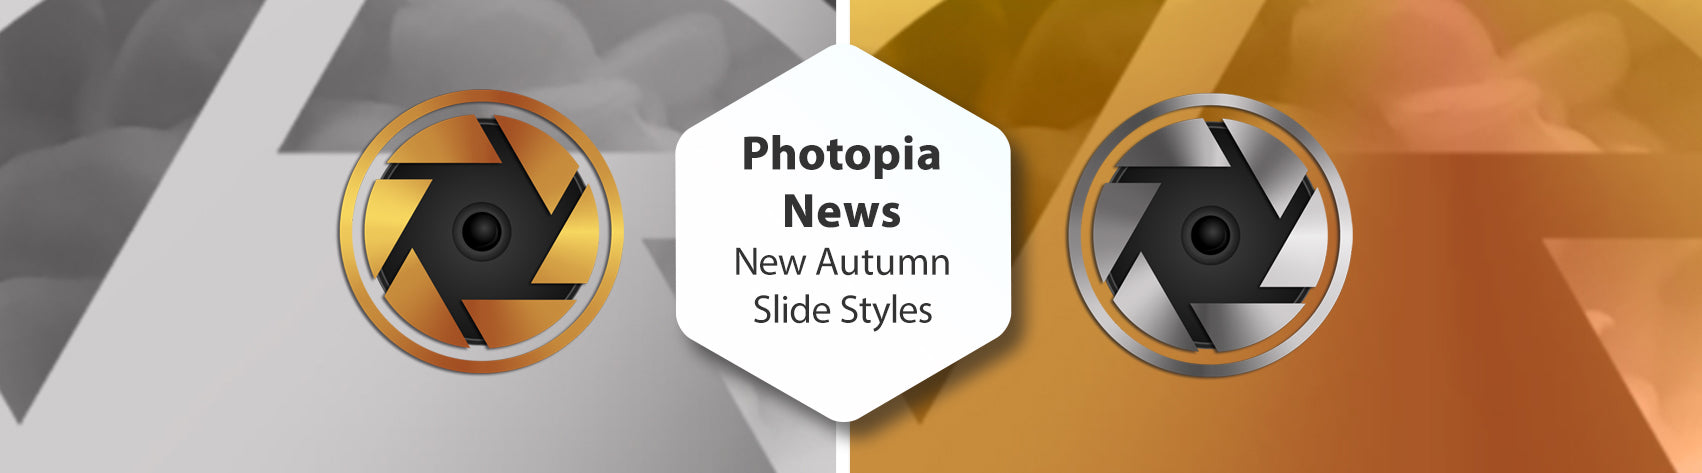 Photopia News - New Free Autumn Slide Styles